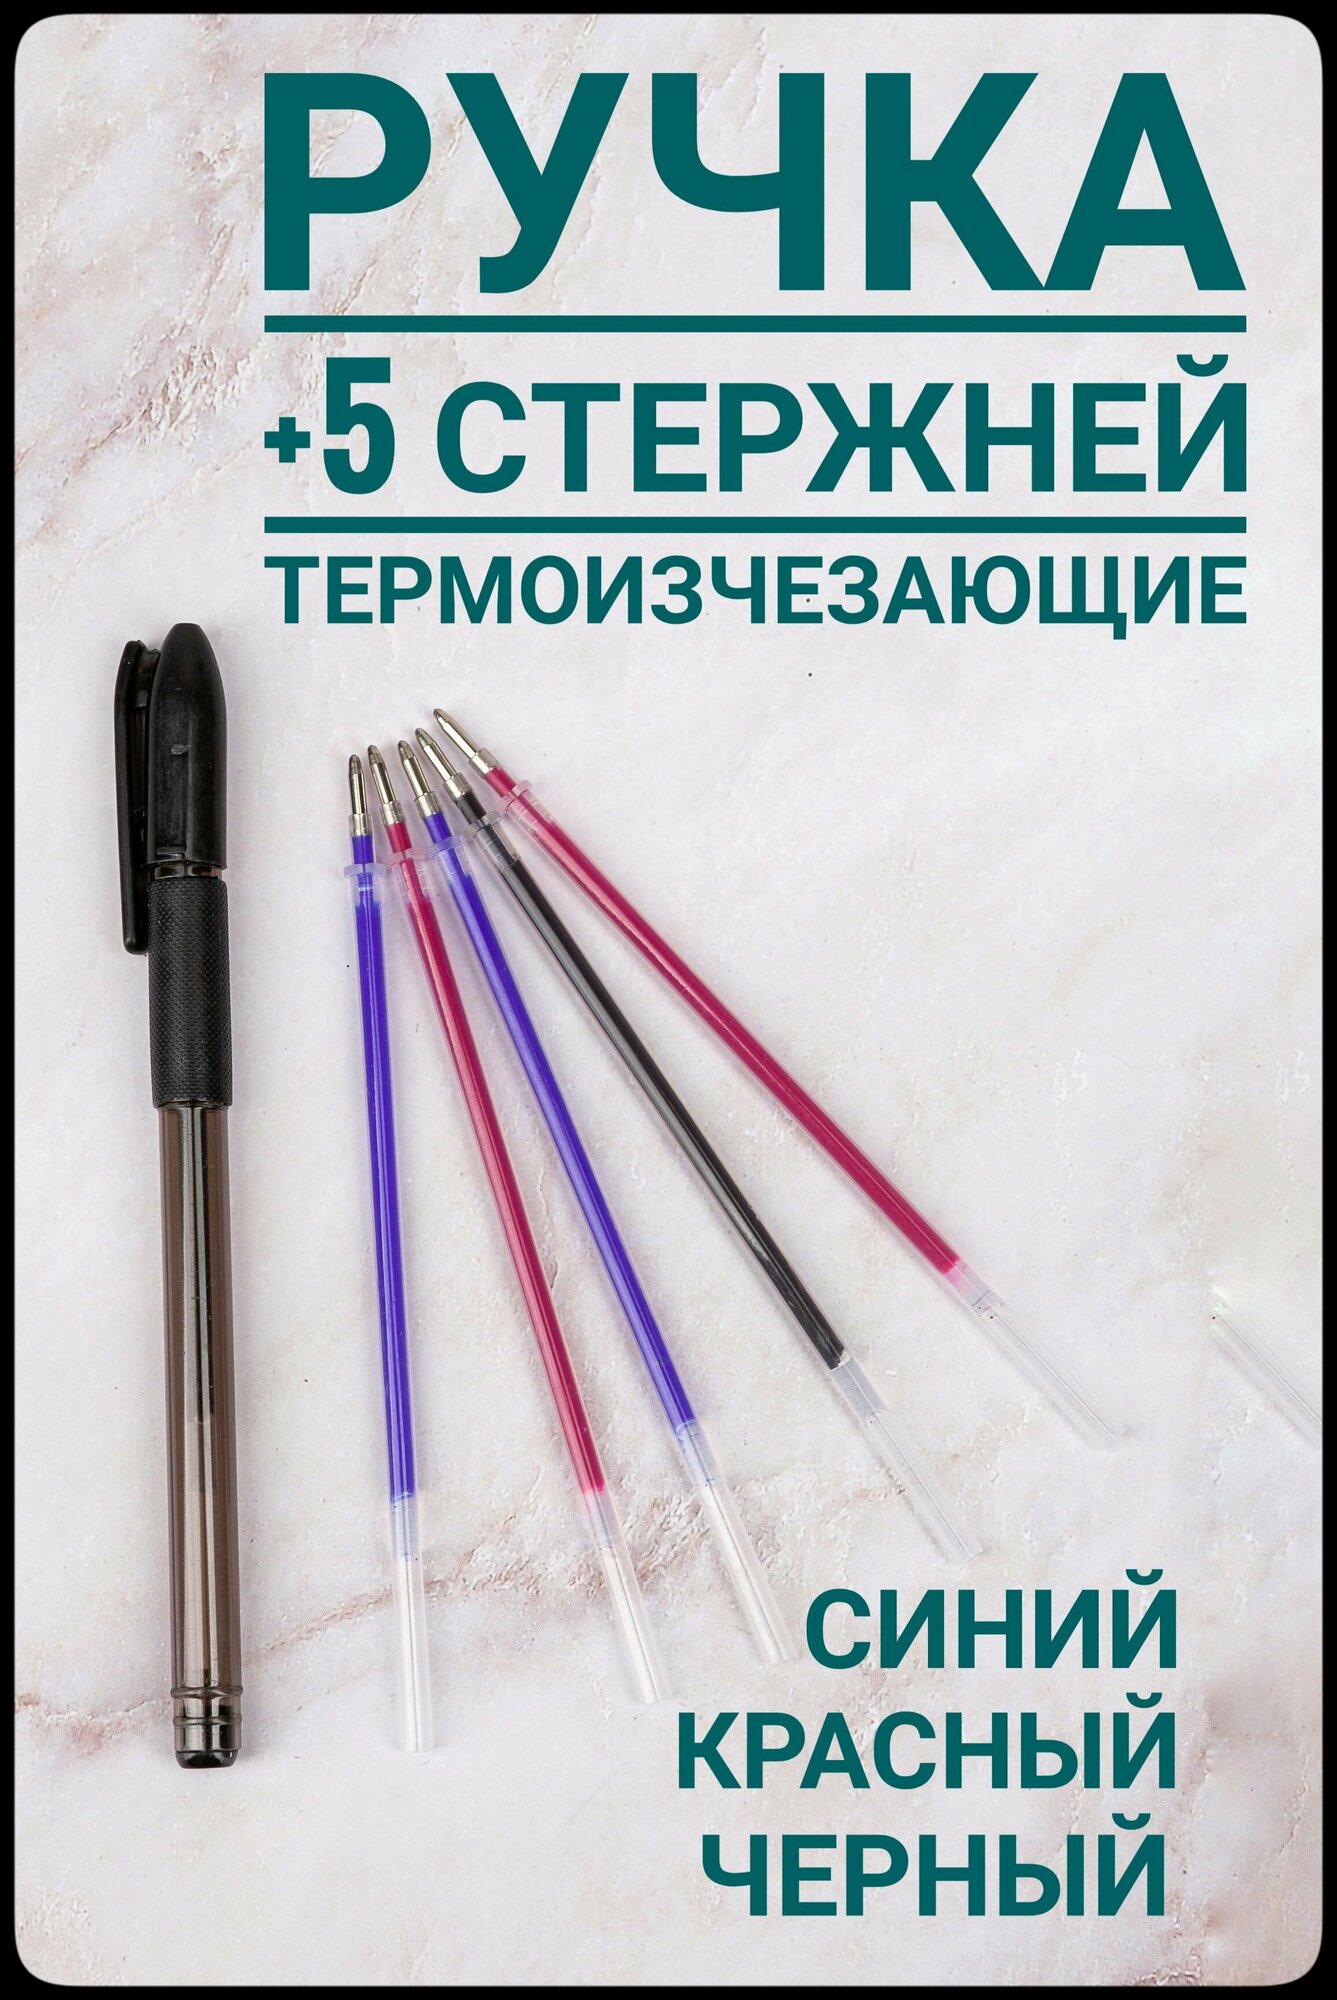 Ручка для ткани термоисчезающая с комплектом стержней цвет красный/ синий/ черный для шитья и рукоделия.